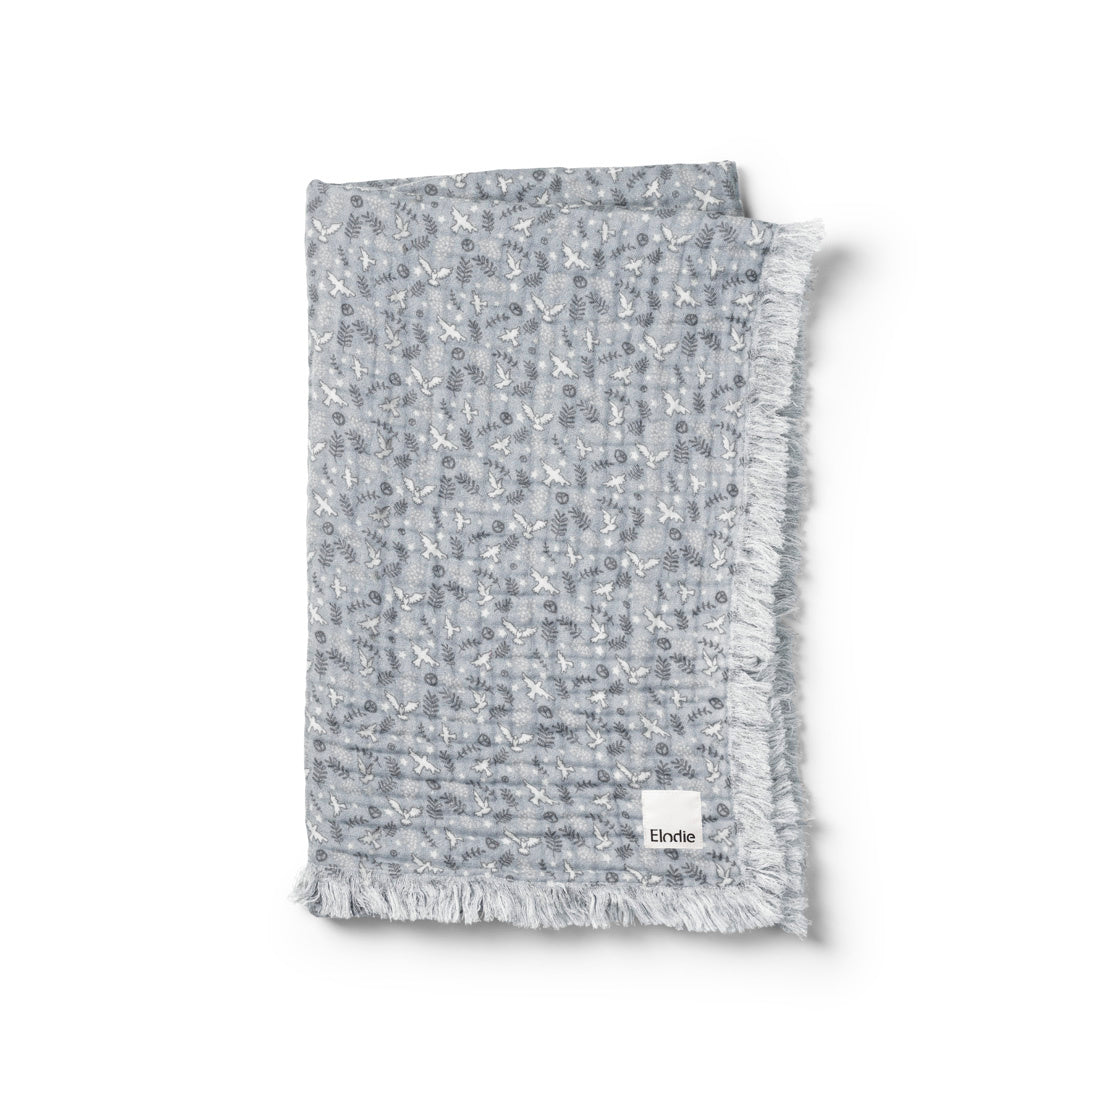 Elodie Details - Soft Cotton Blanket blanket - Free Bird